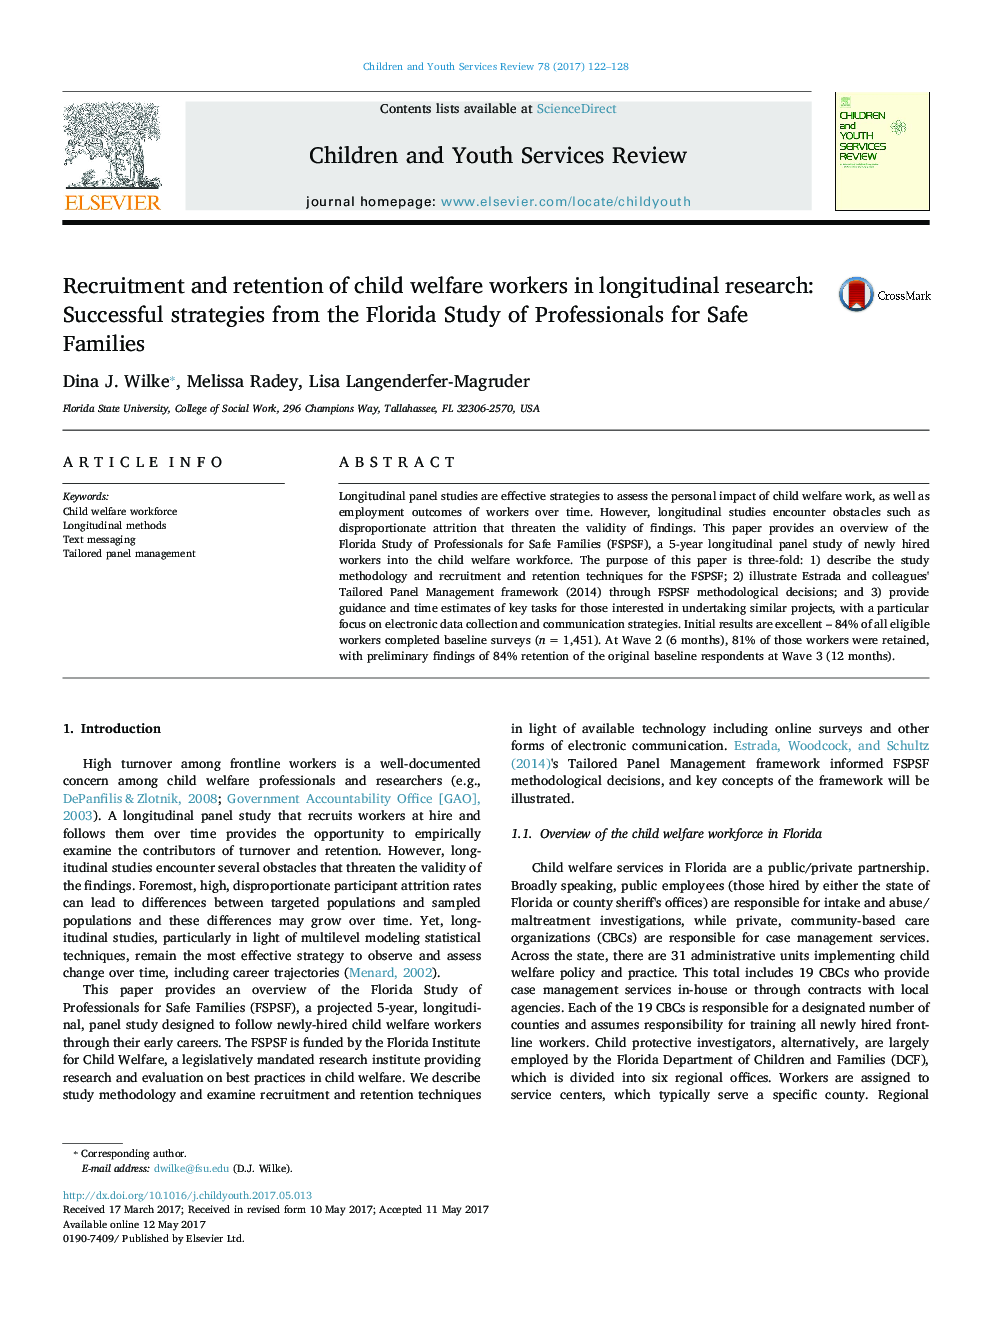 استخدام و نگهداری کارگران رفاه کودکان در تحقیقات طولی: استراتژی های موفقیت آمیز از مطالعات فلوریدا حرفه ای برای خانواده های ایمن 